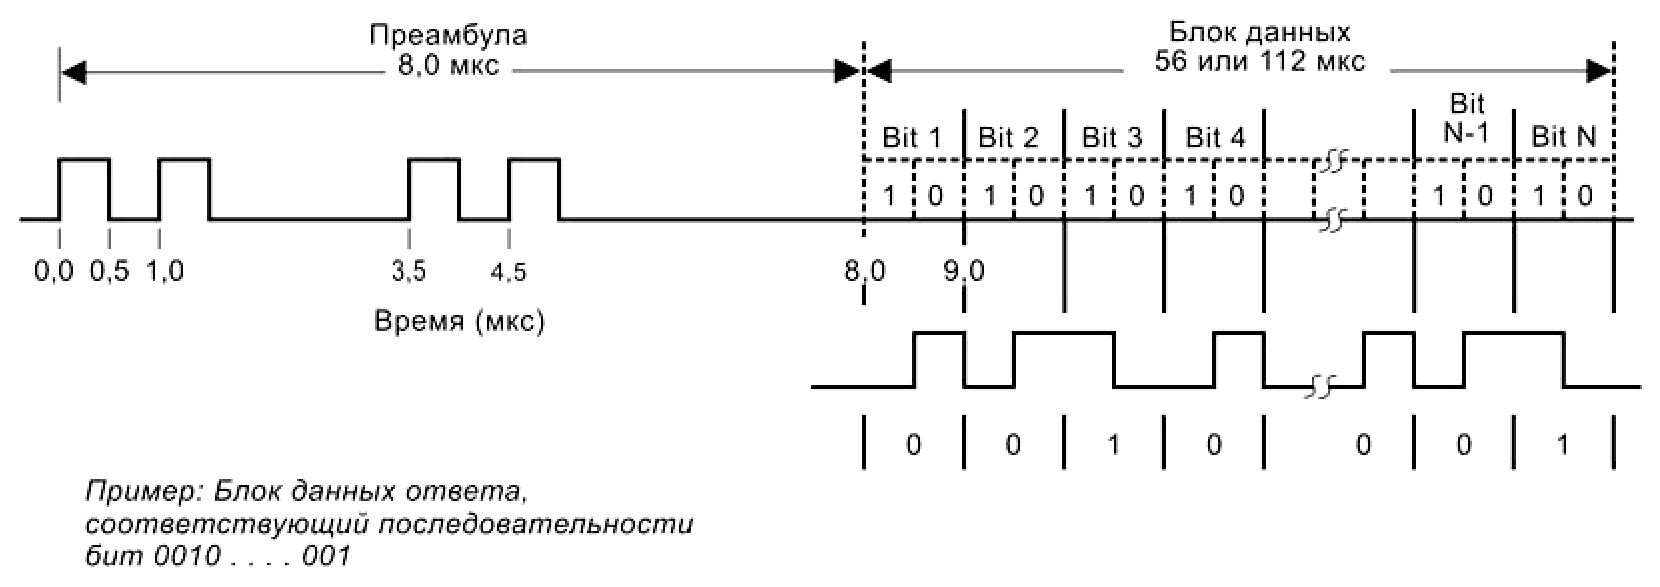 Система пространственного позиционирования для авиации (применяем FPGA) - 2